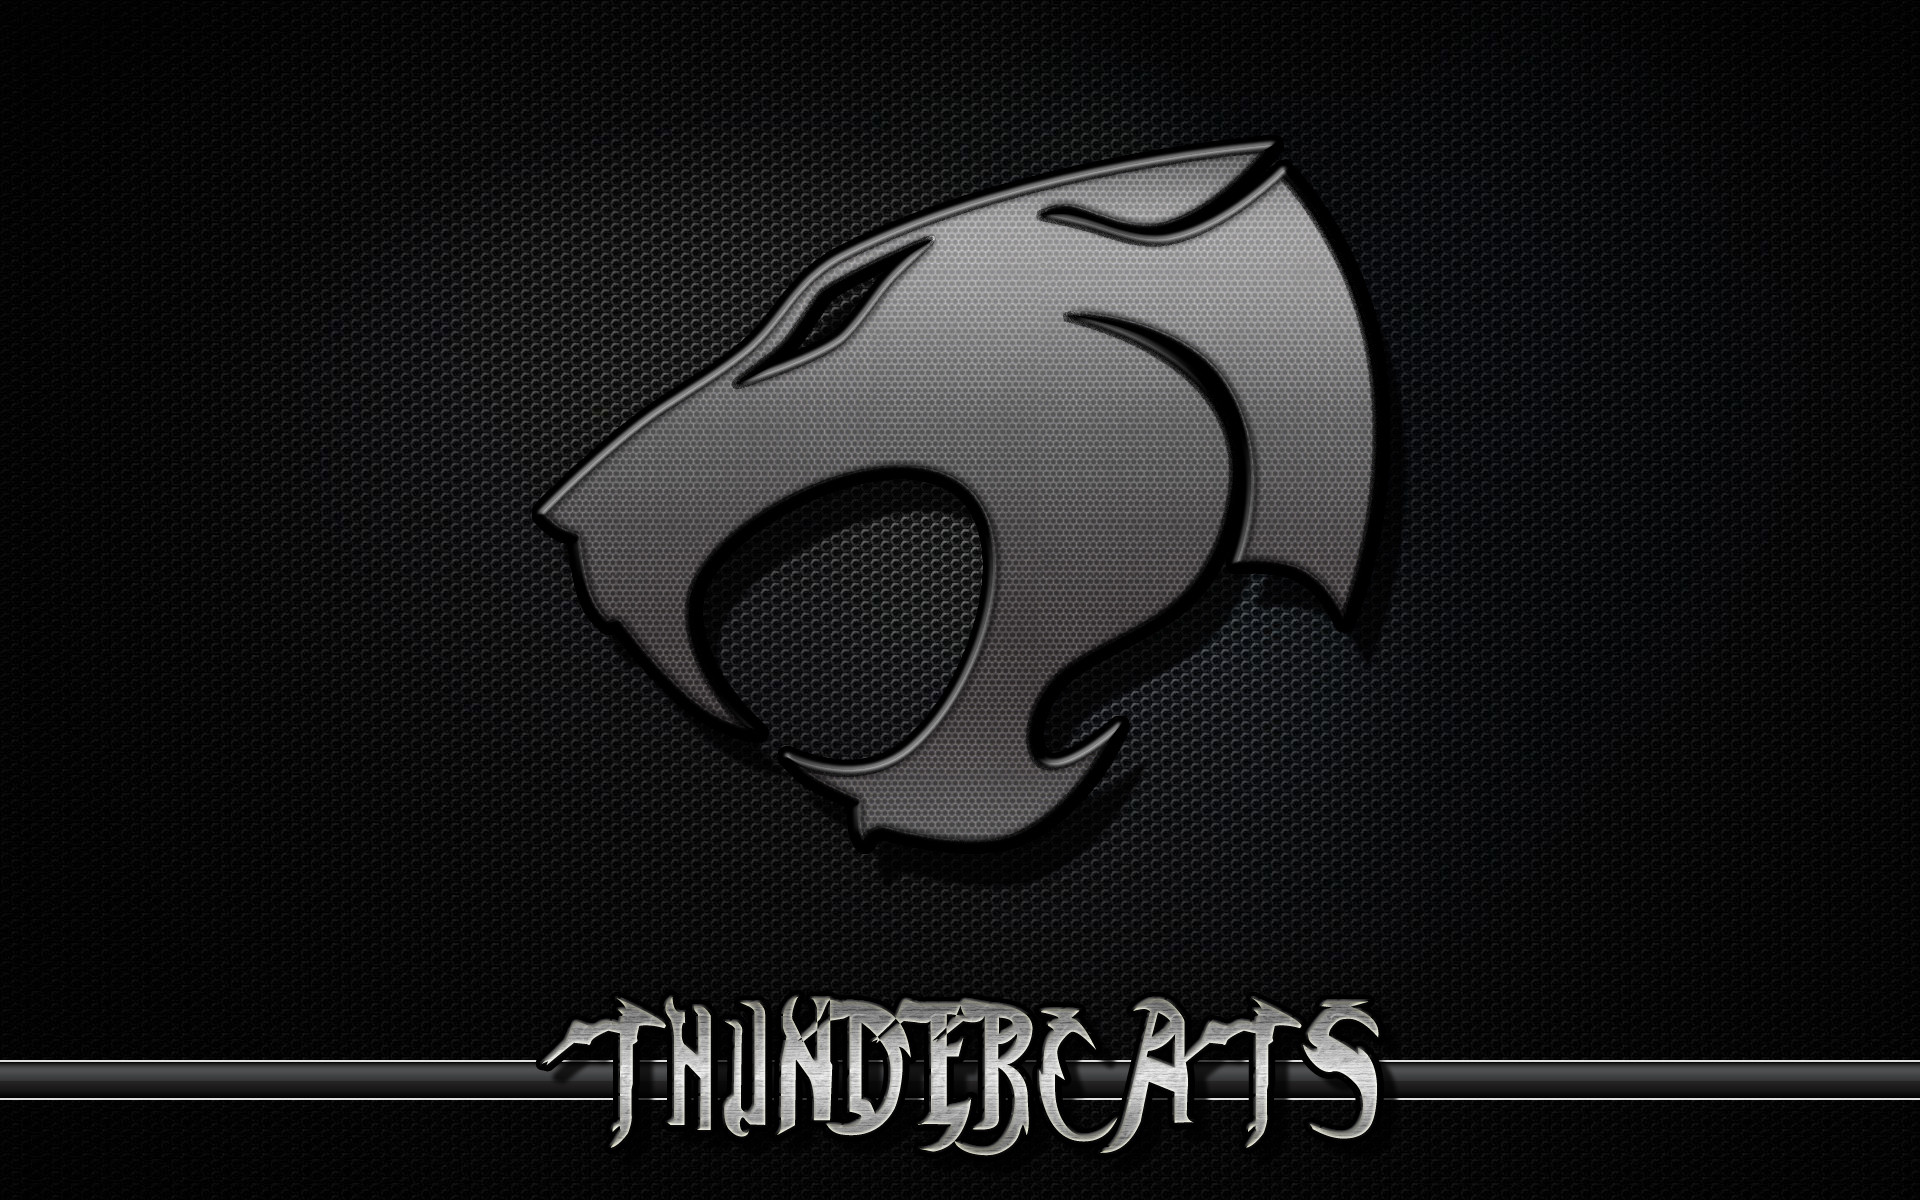 Thundercats Logo, jeep logo wallpaper iphone 5 – JohnyWheels